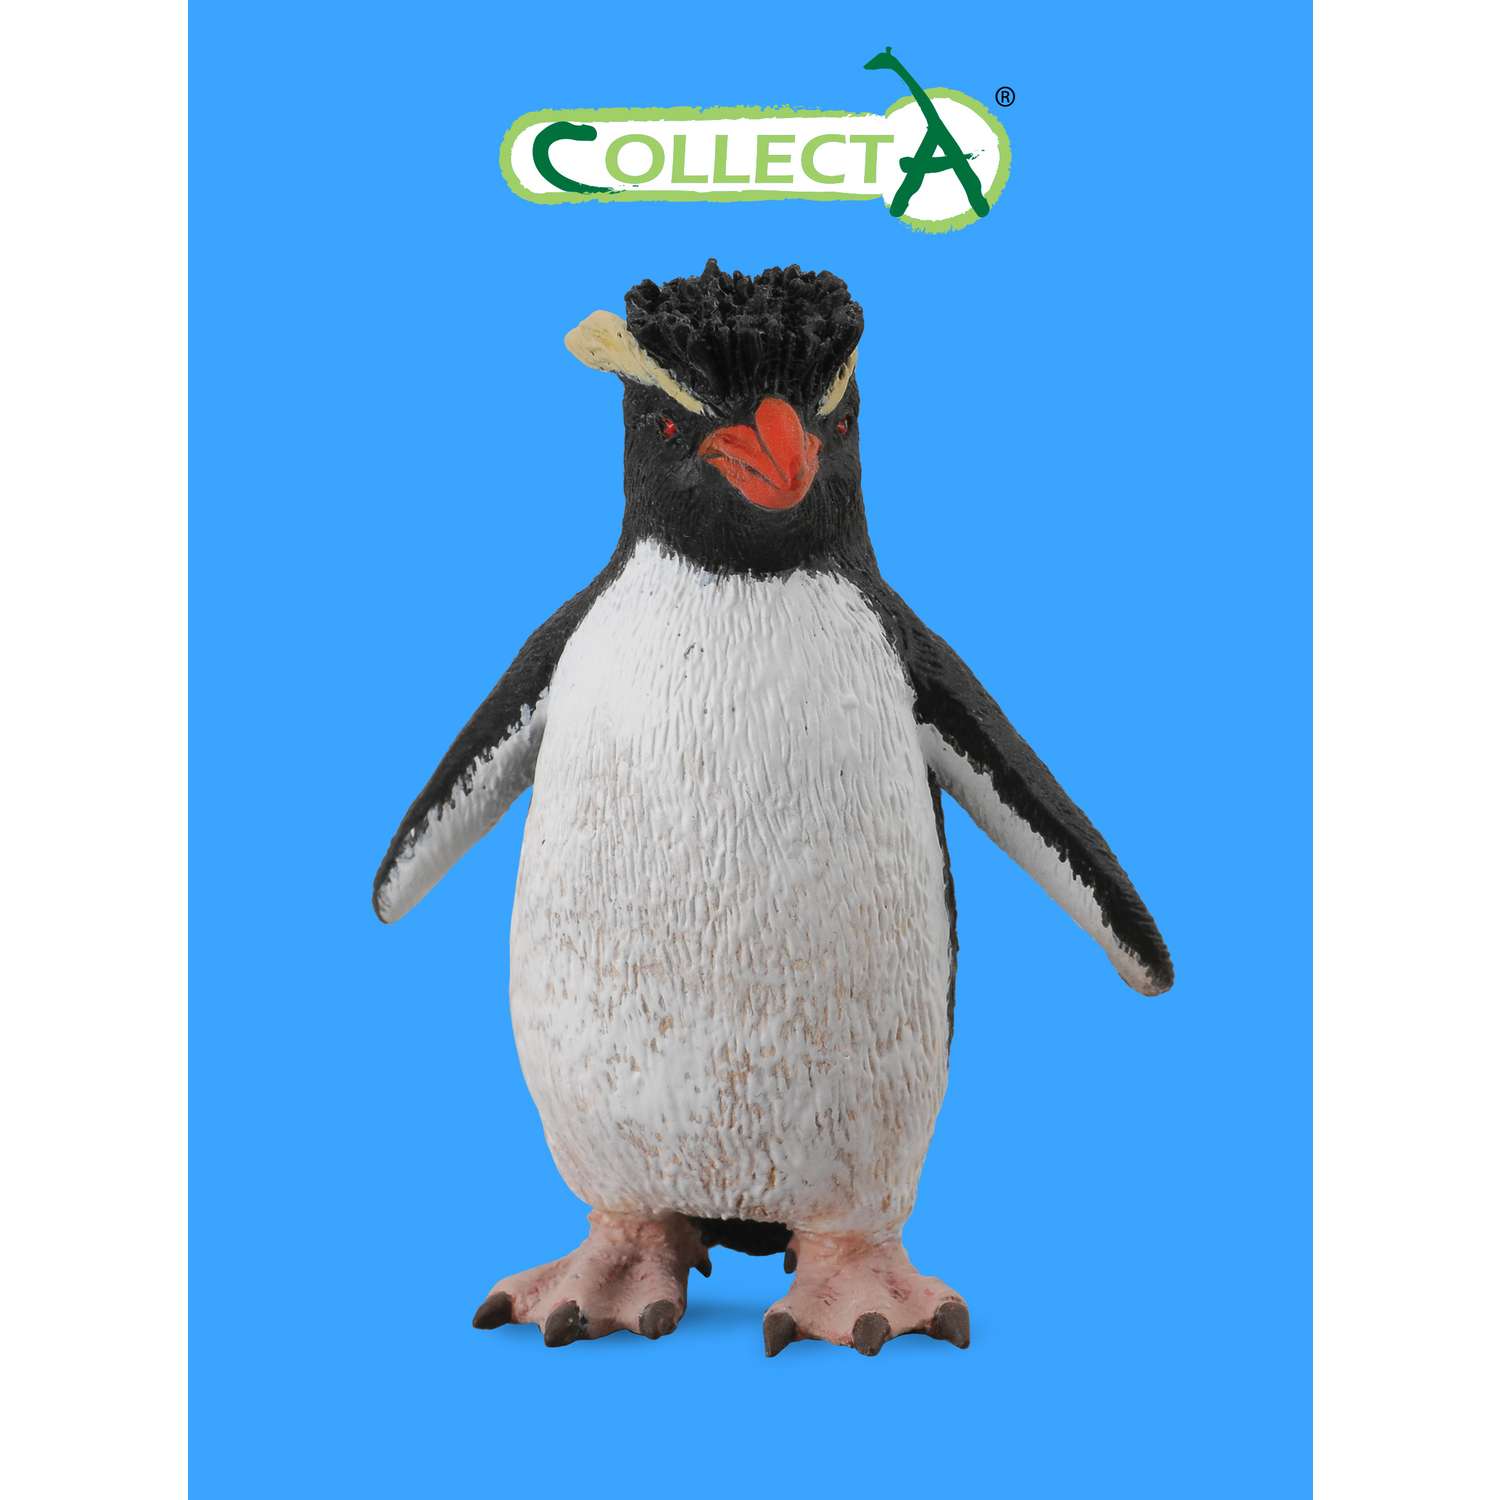 Игрушка Collecta Пингвин Рокхоппера фигурка животного - фото 1